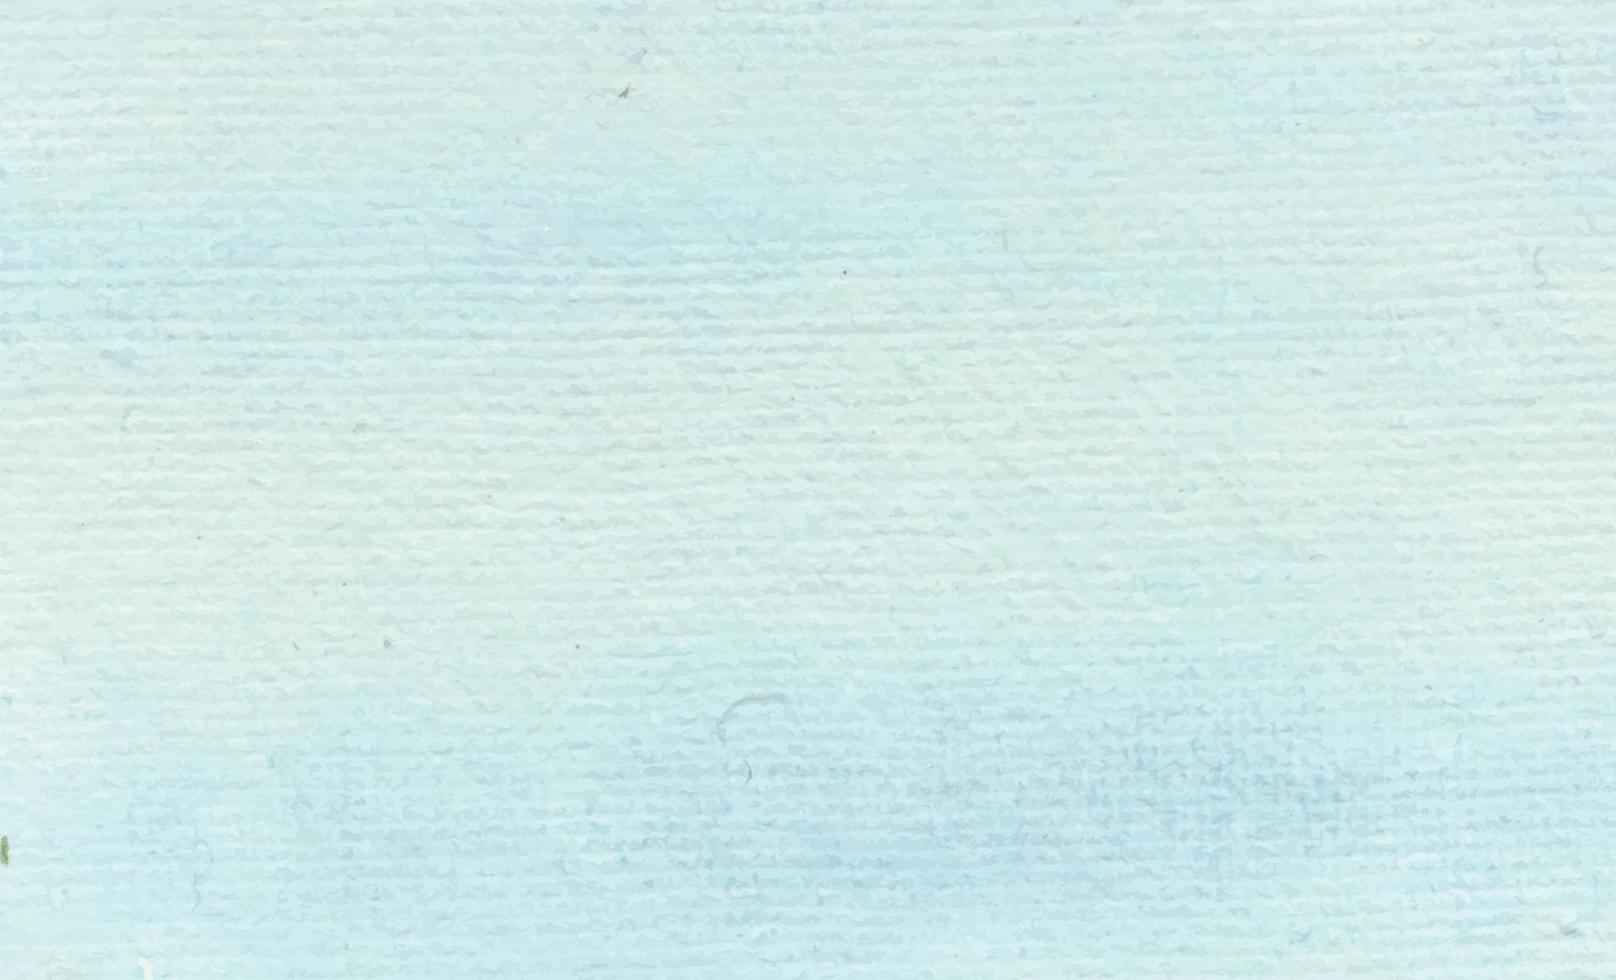 vettore di disegno della vernice del fondo dell'acquerello del cielo blu